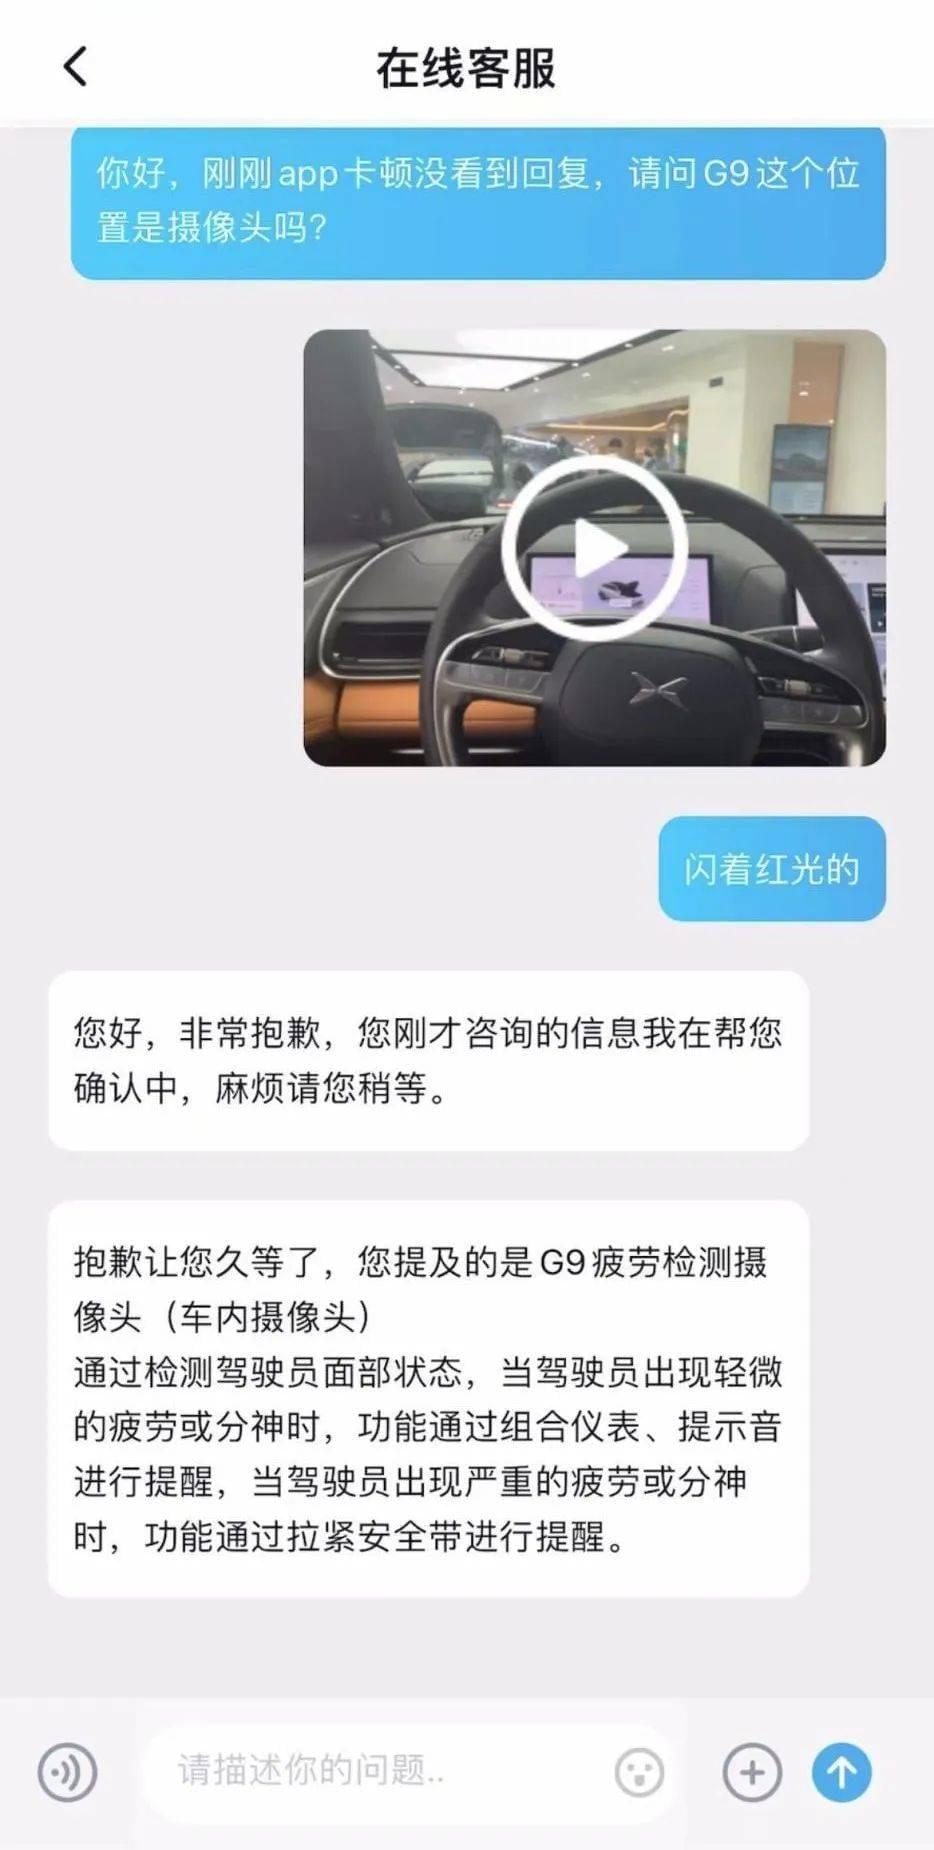 小鹏汽车App在线客服表示，车内安装了疲劳检测摄像头<br>